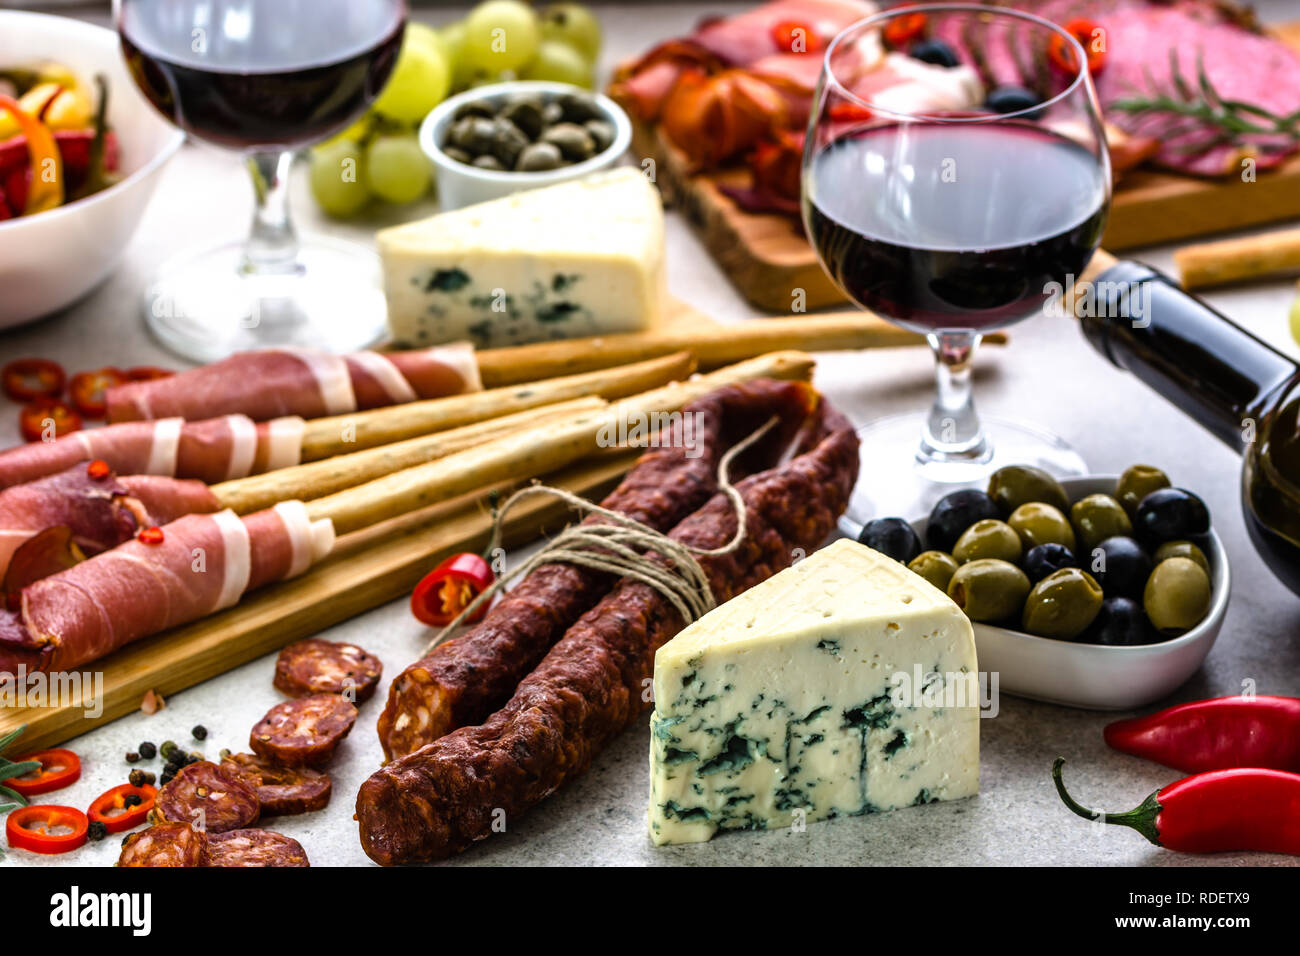 Tradizionali tapas bar di vino o uno snack sul tavolo, la selezione di cibo, dieta mediterranea Foto Stock